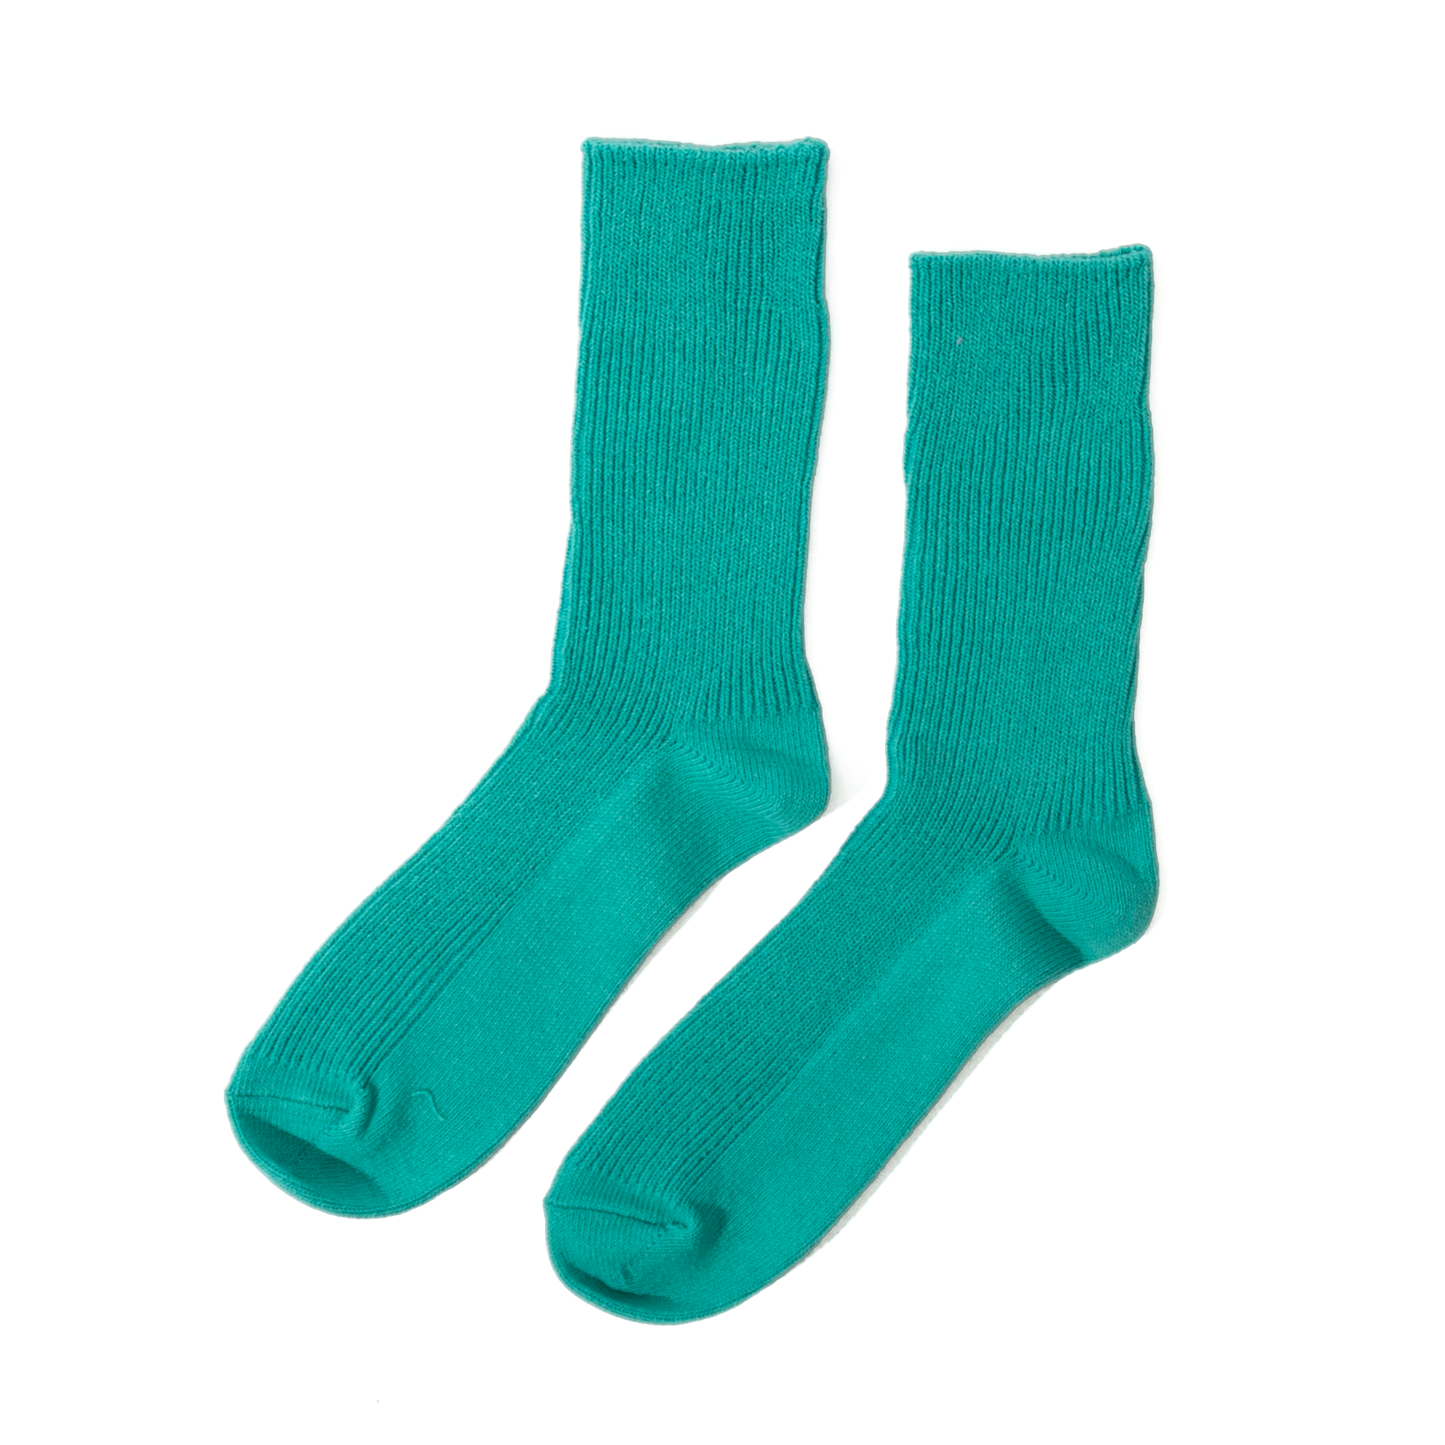 RoToTo Recycled Cotton Rib Socks